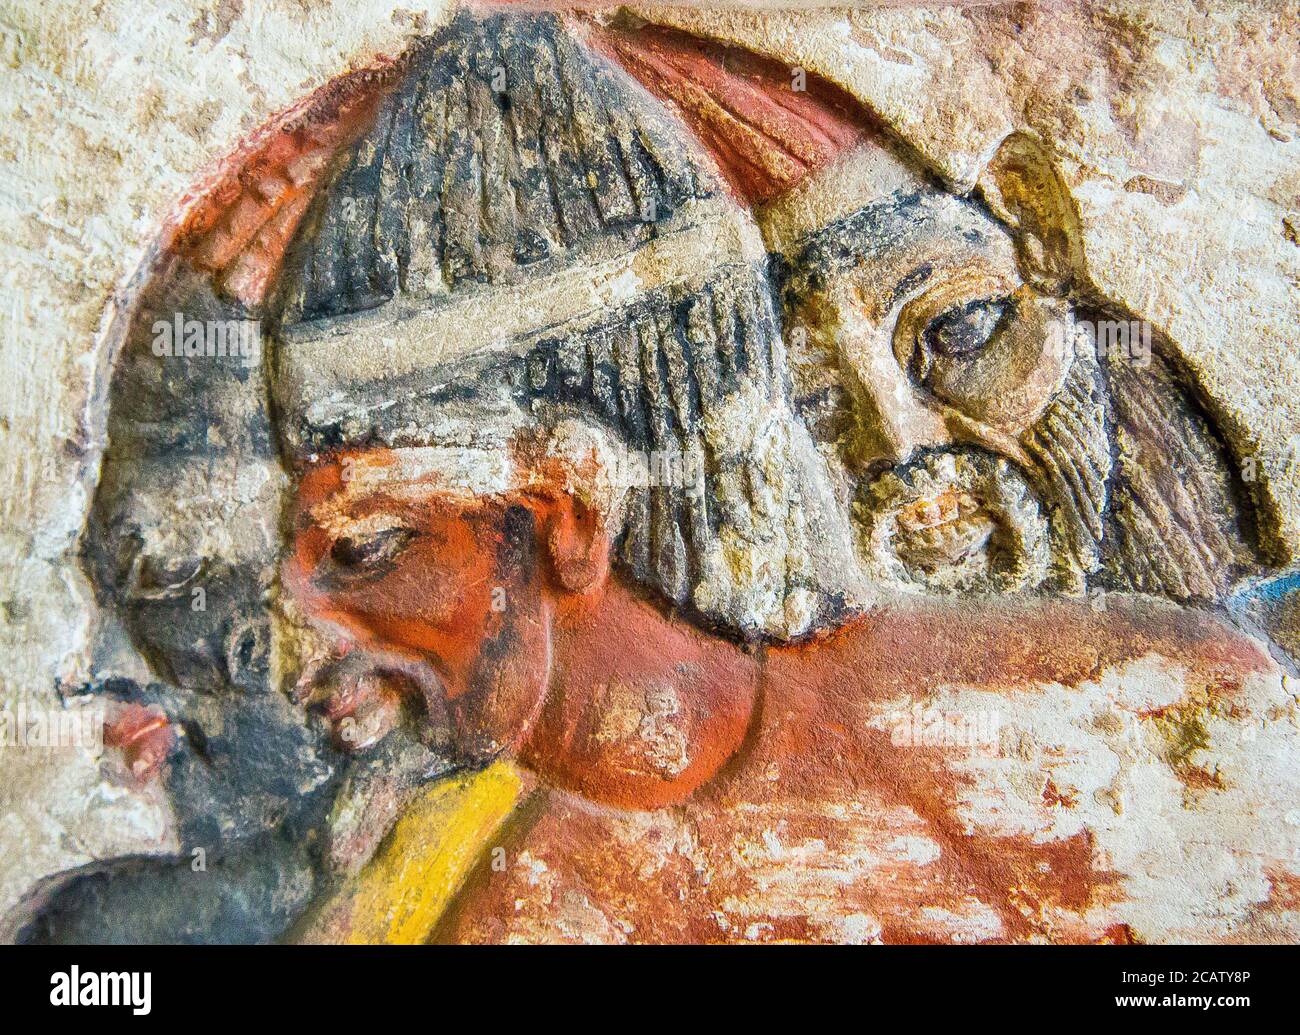 Égypte, le Caire, Musée égyptien, soulagement du roi Ramsès II tuant des ennemis étrangers : il tient un Nubien, un libyen et un syrien par les cheveux. Banque D'Images